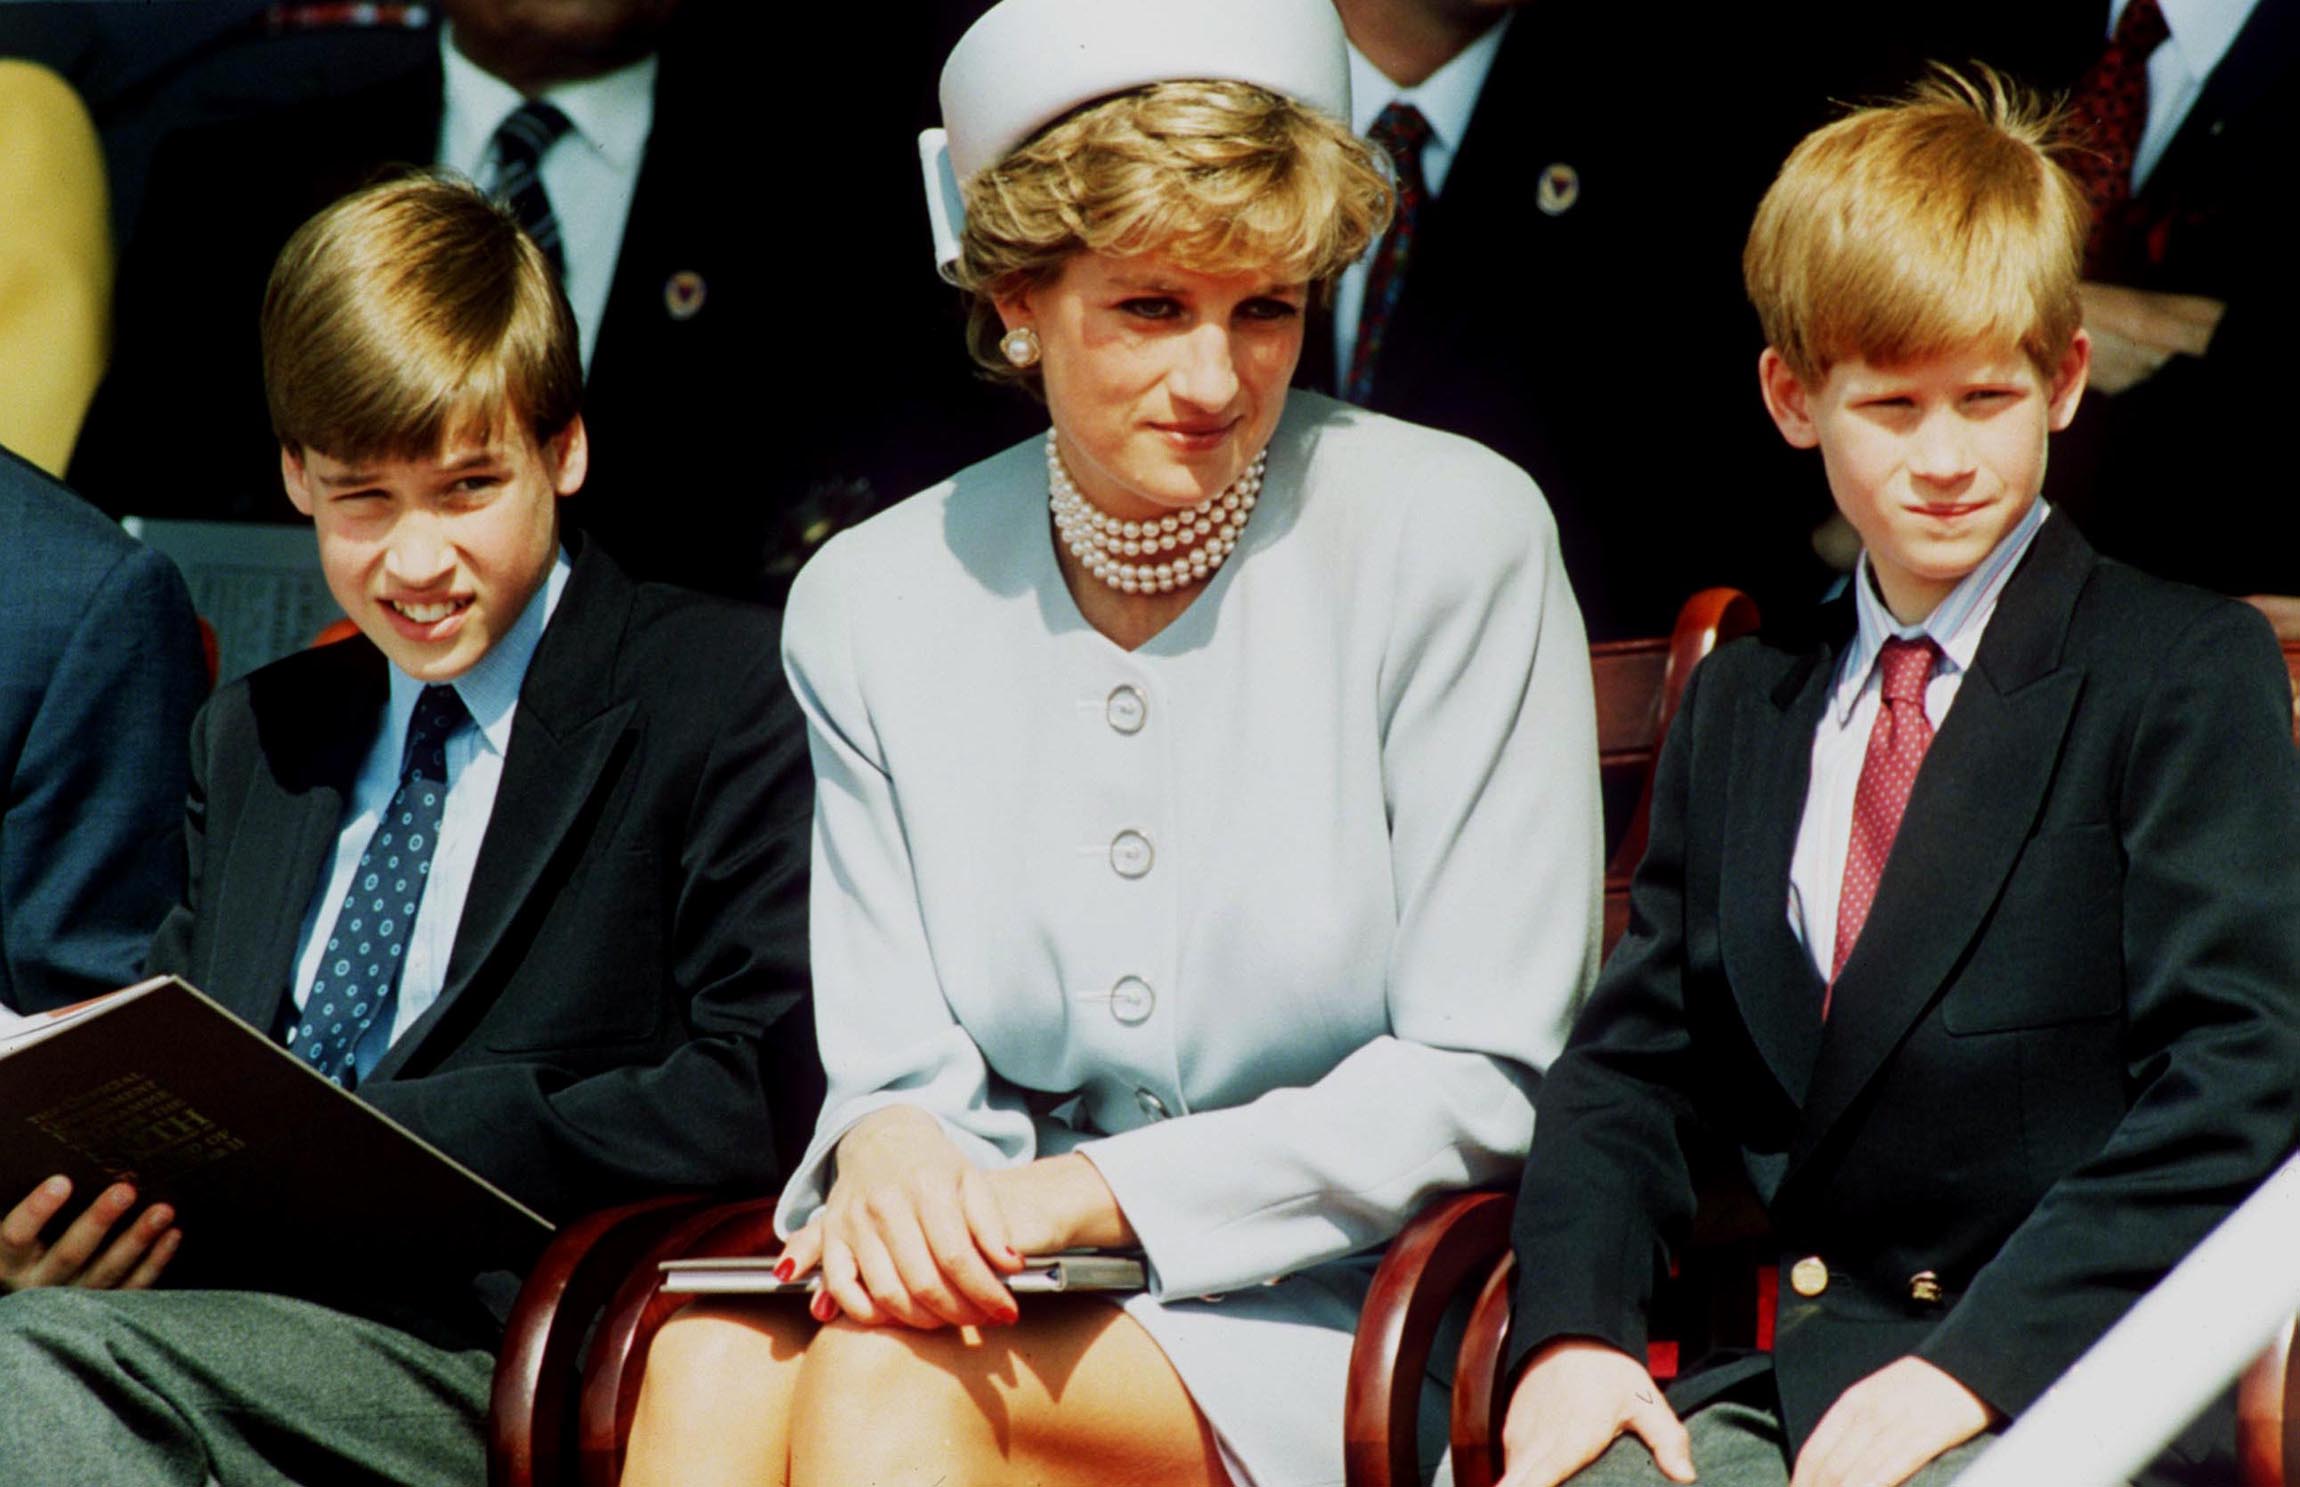 La princesse Diana à Lone avec le prince William et le prince Harry en 1995. | Source : Getty Images